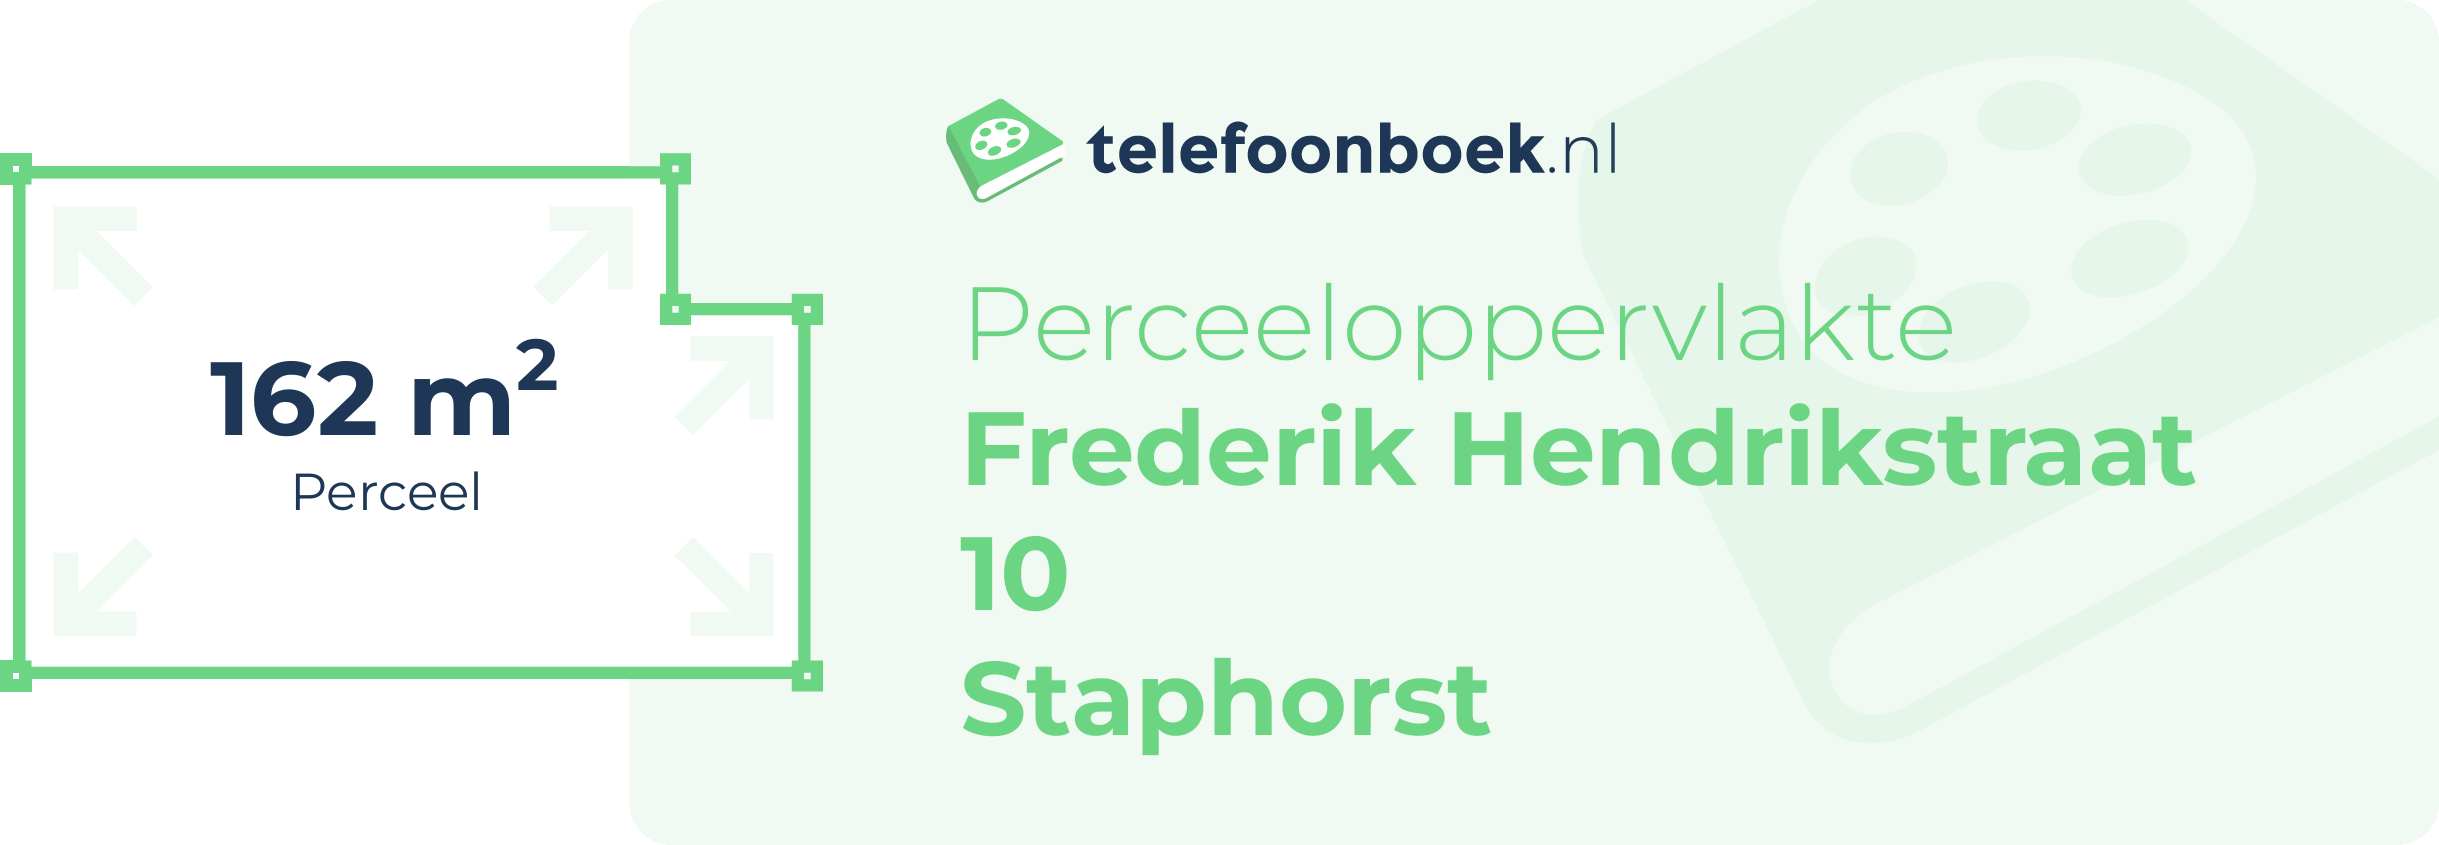 Perceeloppervlakte Frederik Hendrikstraat 10 Staphorst